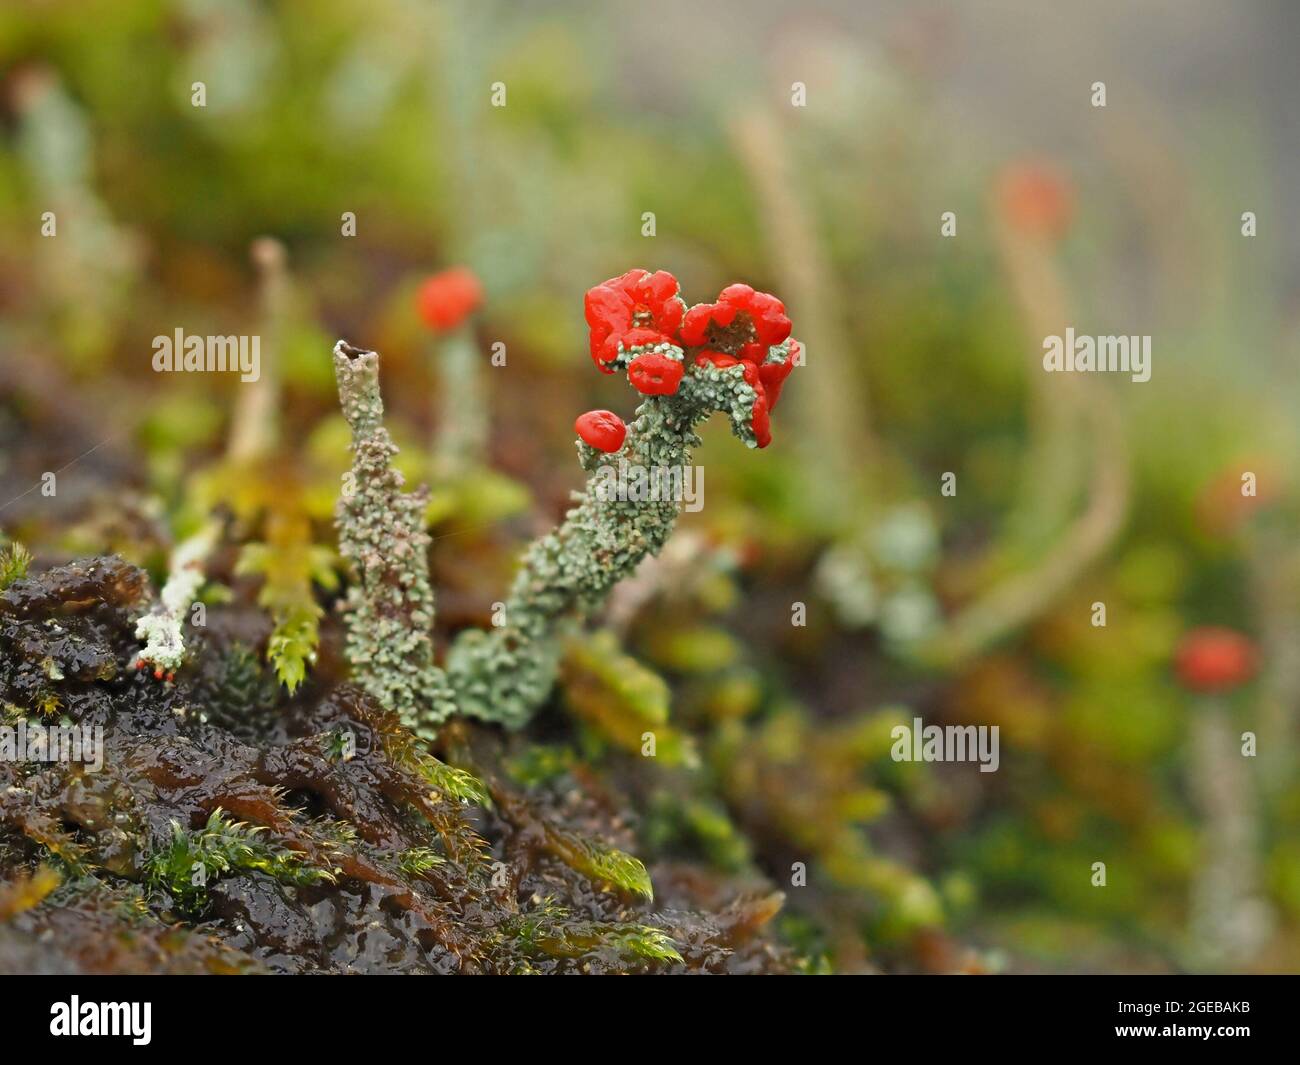 Tiny World - fantastici corpi fruttati rossi di Cladonia cristatella – soldati britannici lichen su gambi grigi frilly in Cumbria Inghilterra Regno Unito Foto Stock